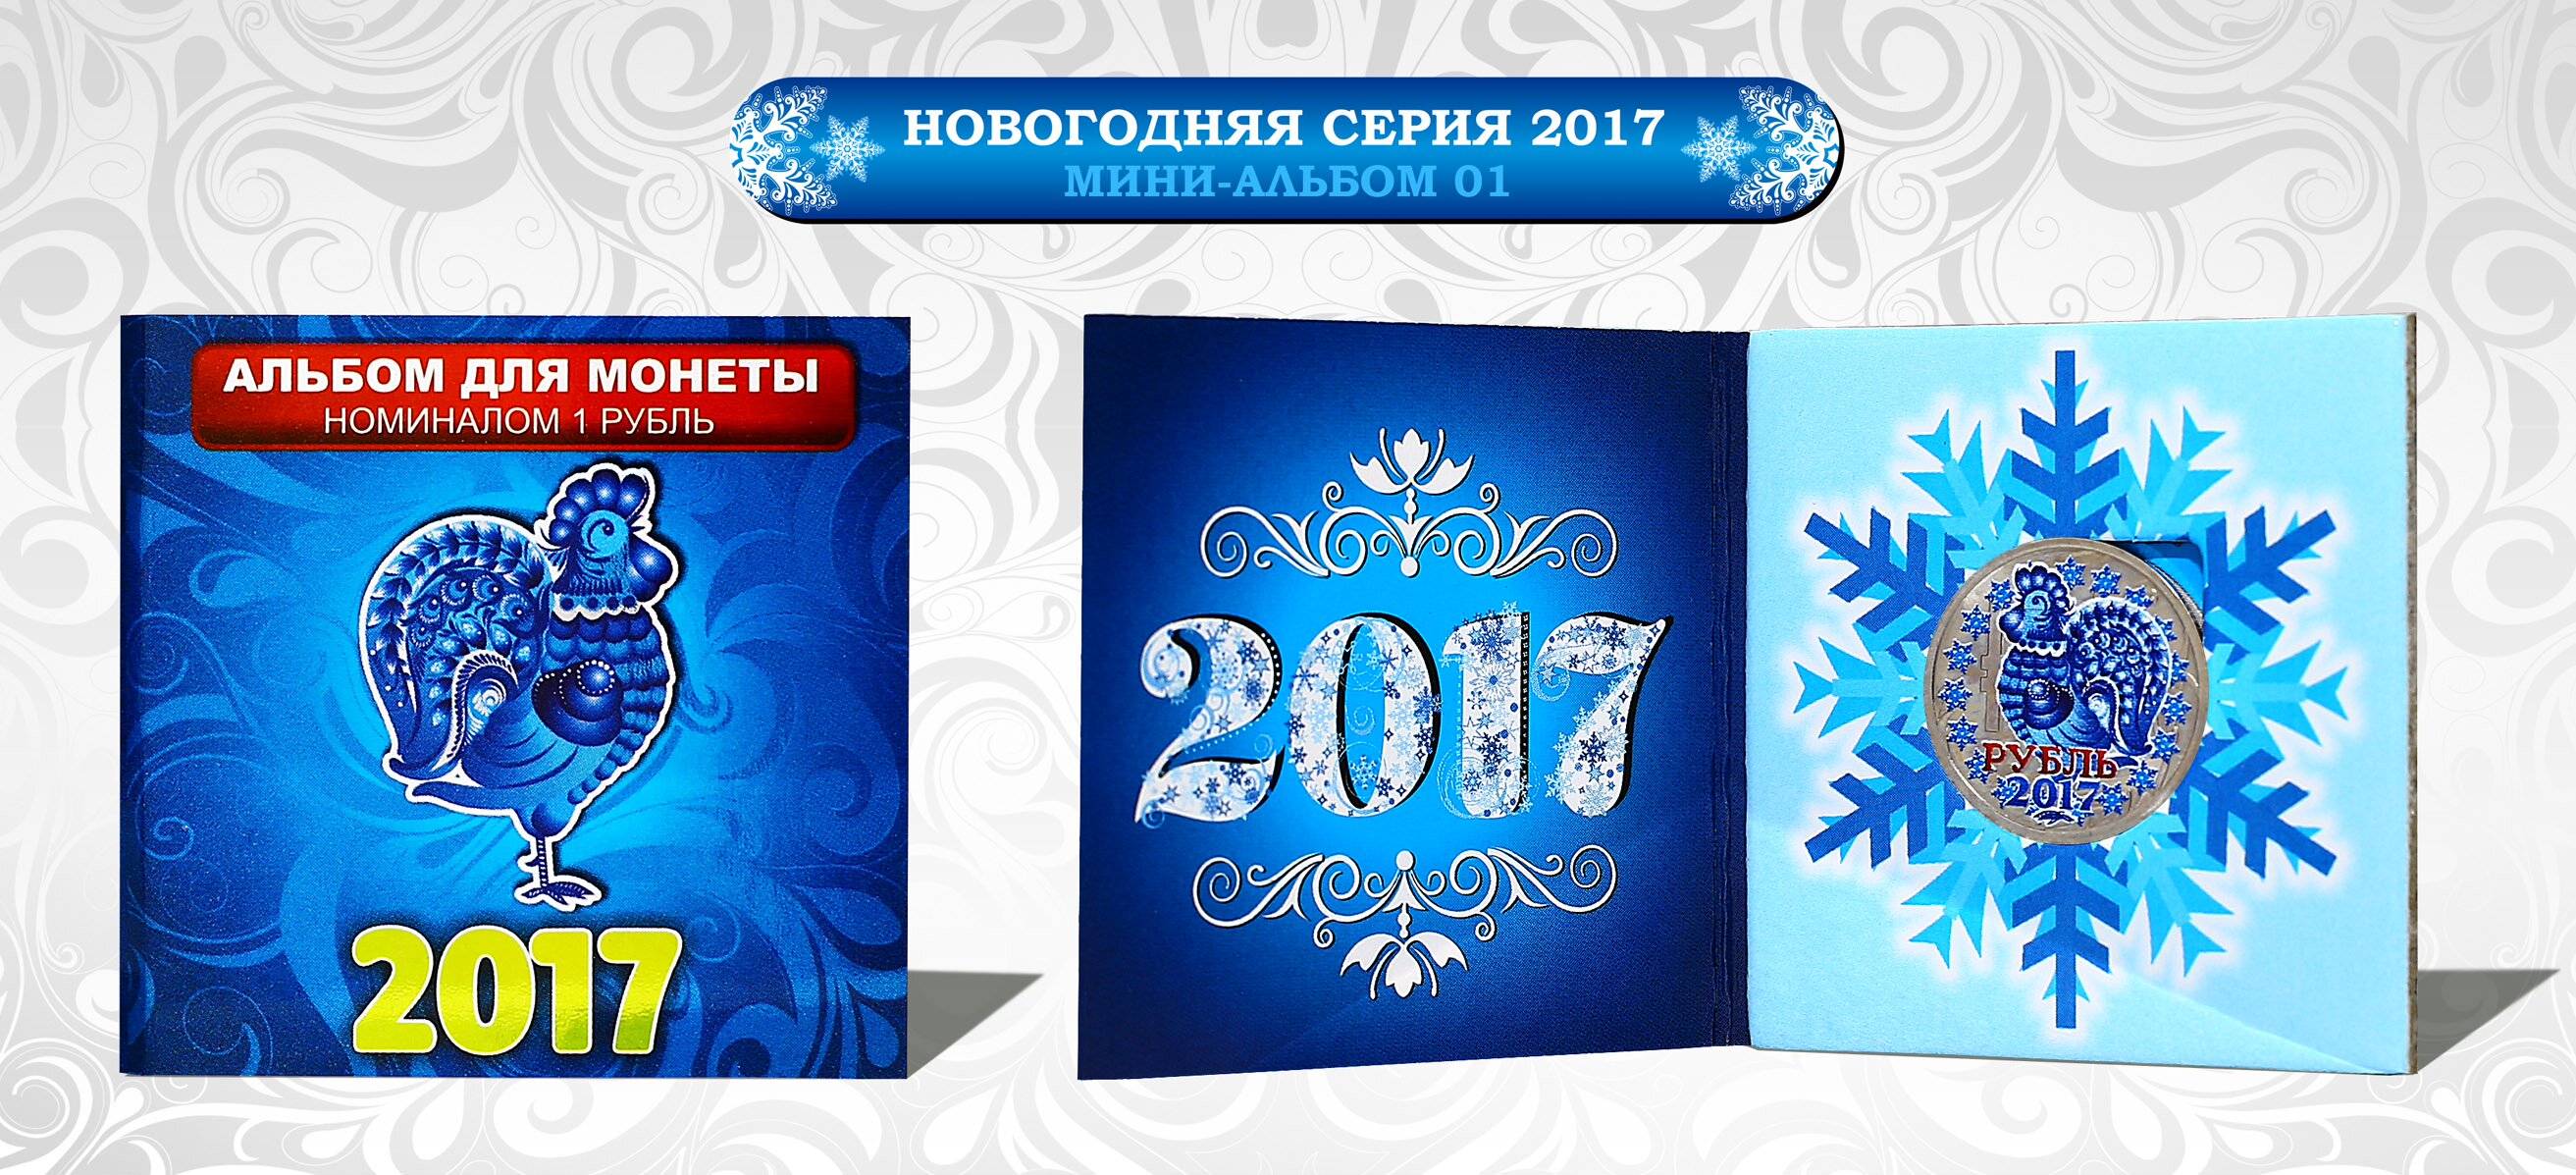 Рубль под новый год. Официальные карты Бим НГ.